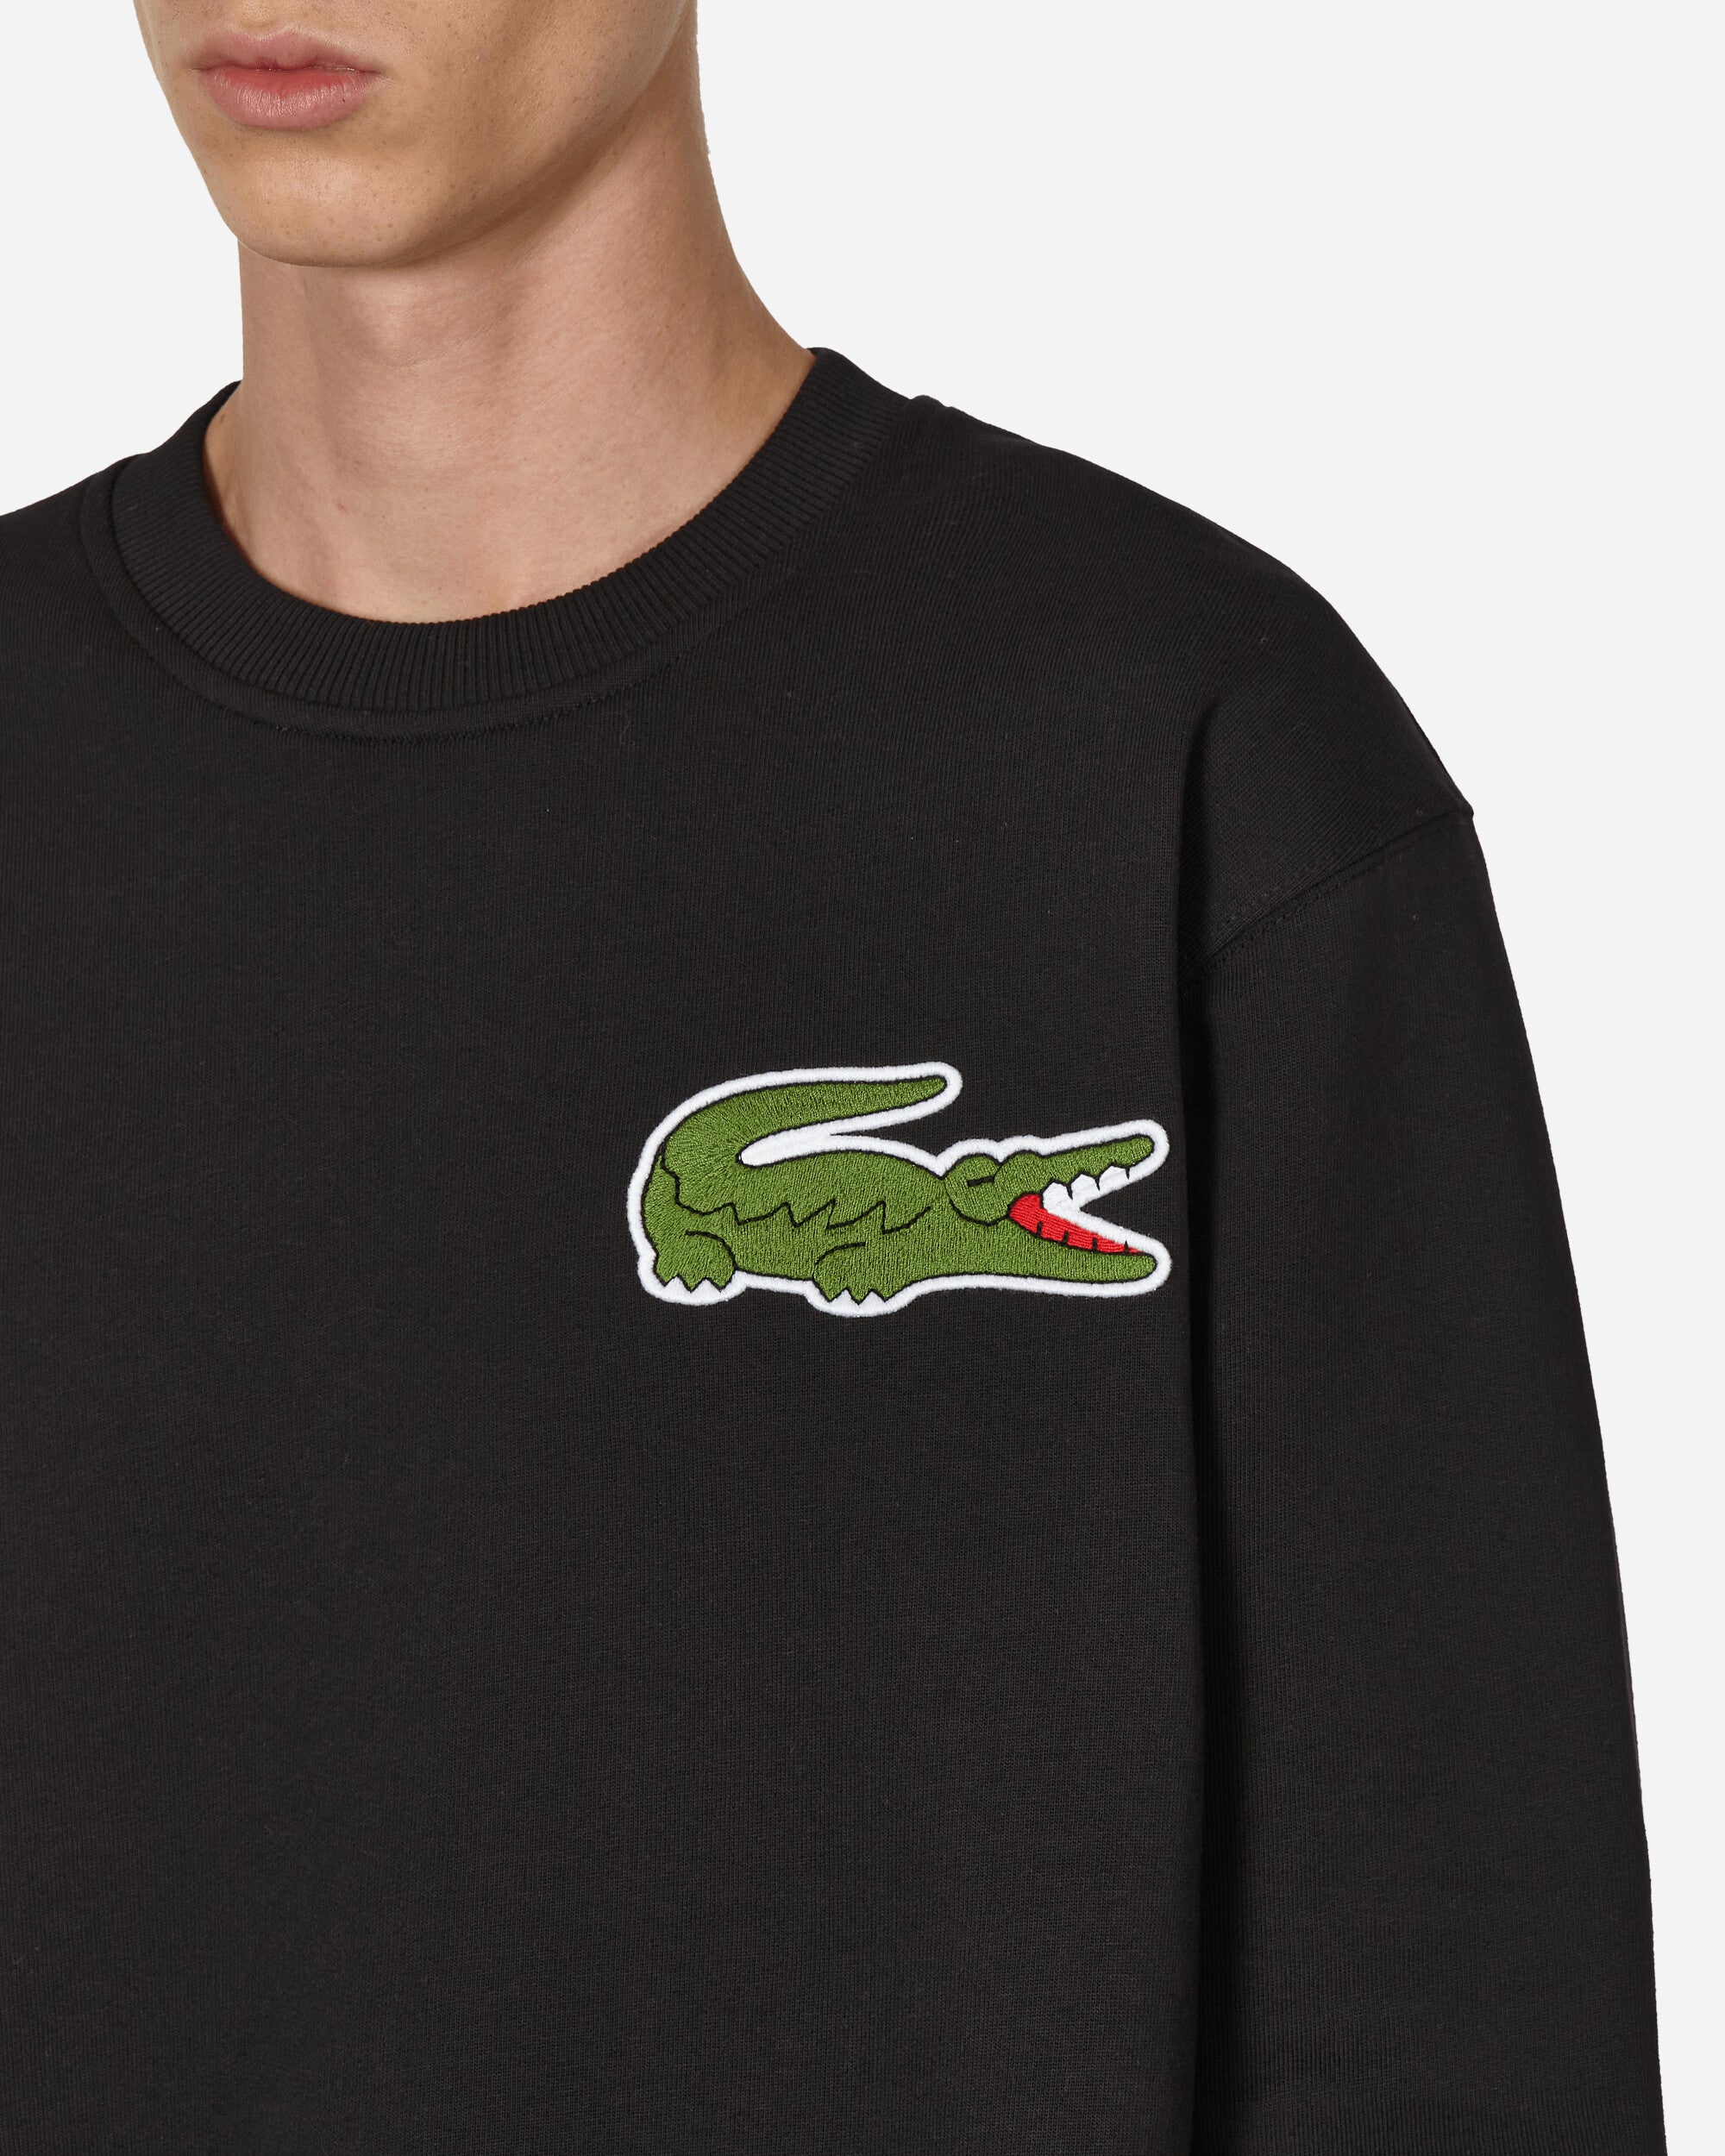 Comme Des Garçons Shirt Mens Sweatshirt Knit X Lacoste Black Sweatshirts Crewneck FL-T005-W23  1